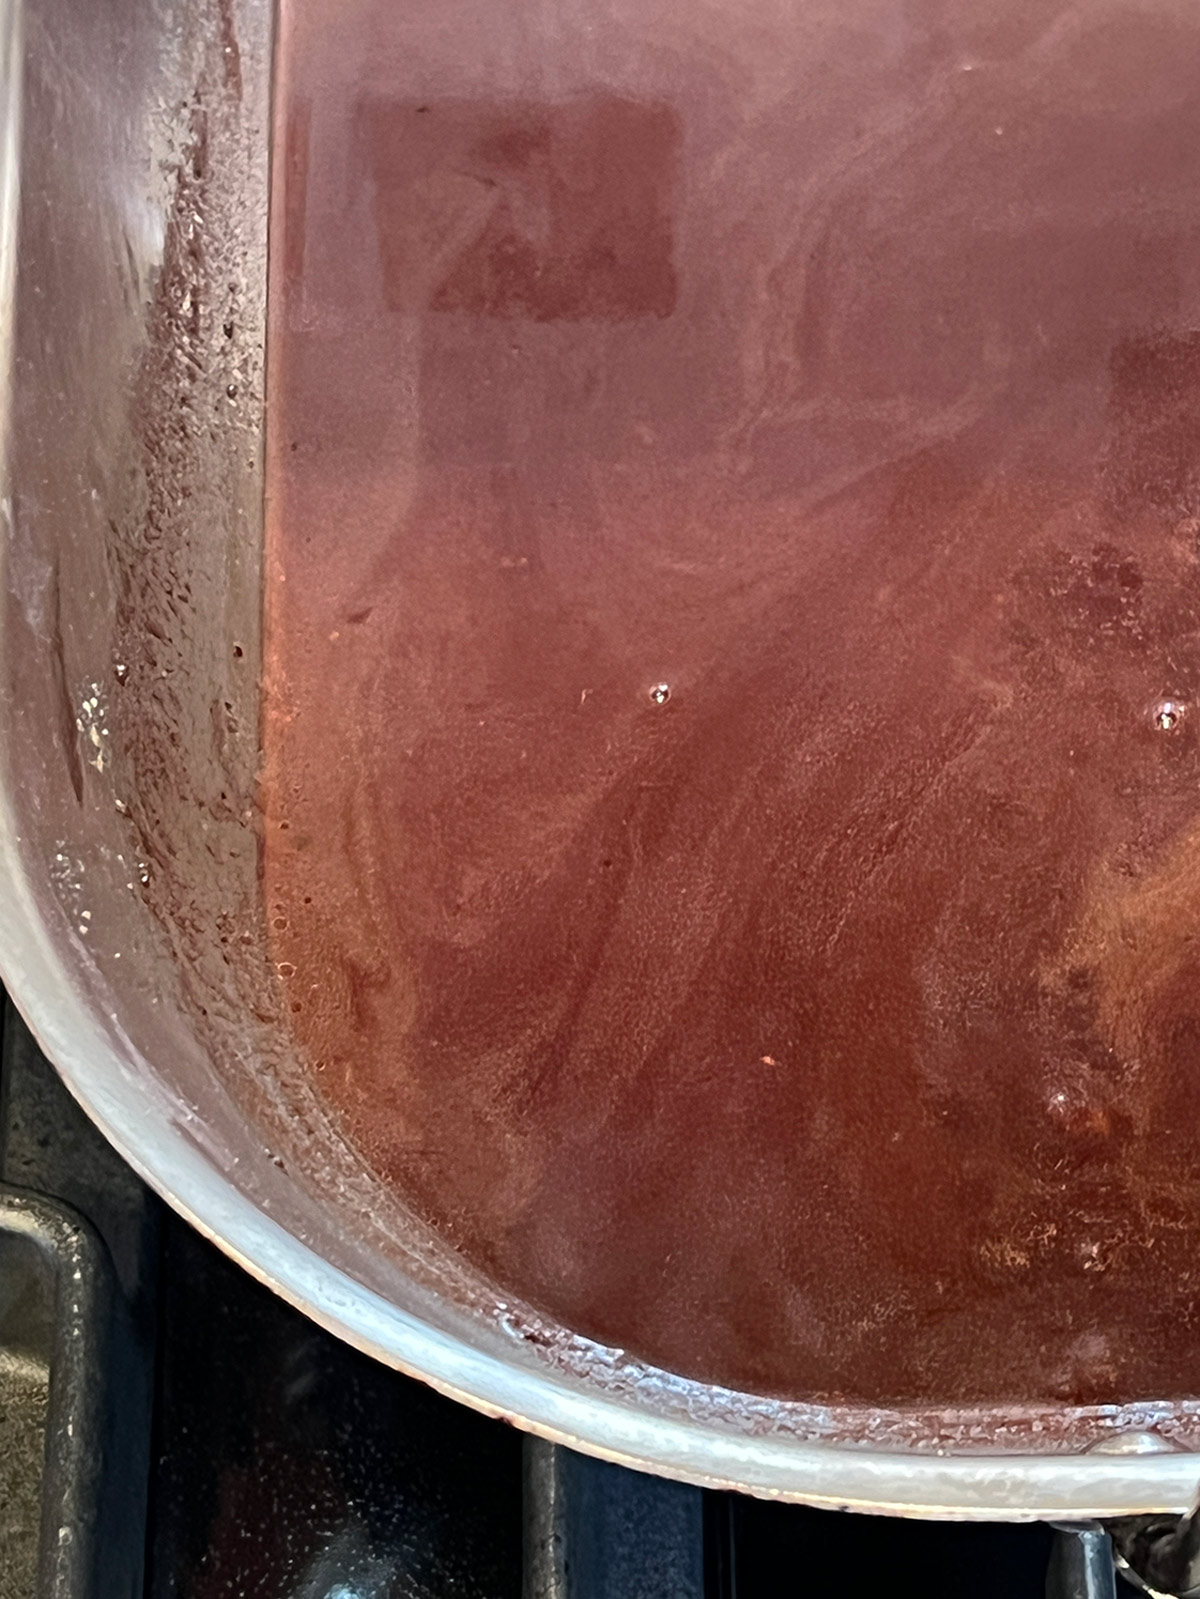 Pomegranate gravy ready in pan.